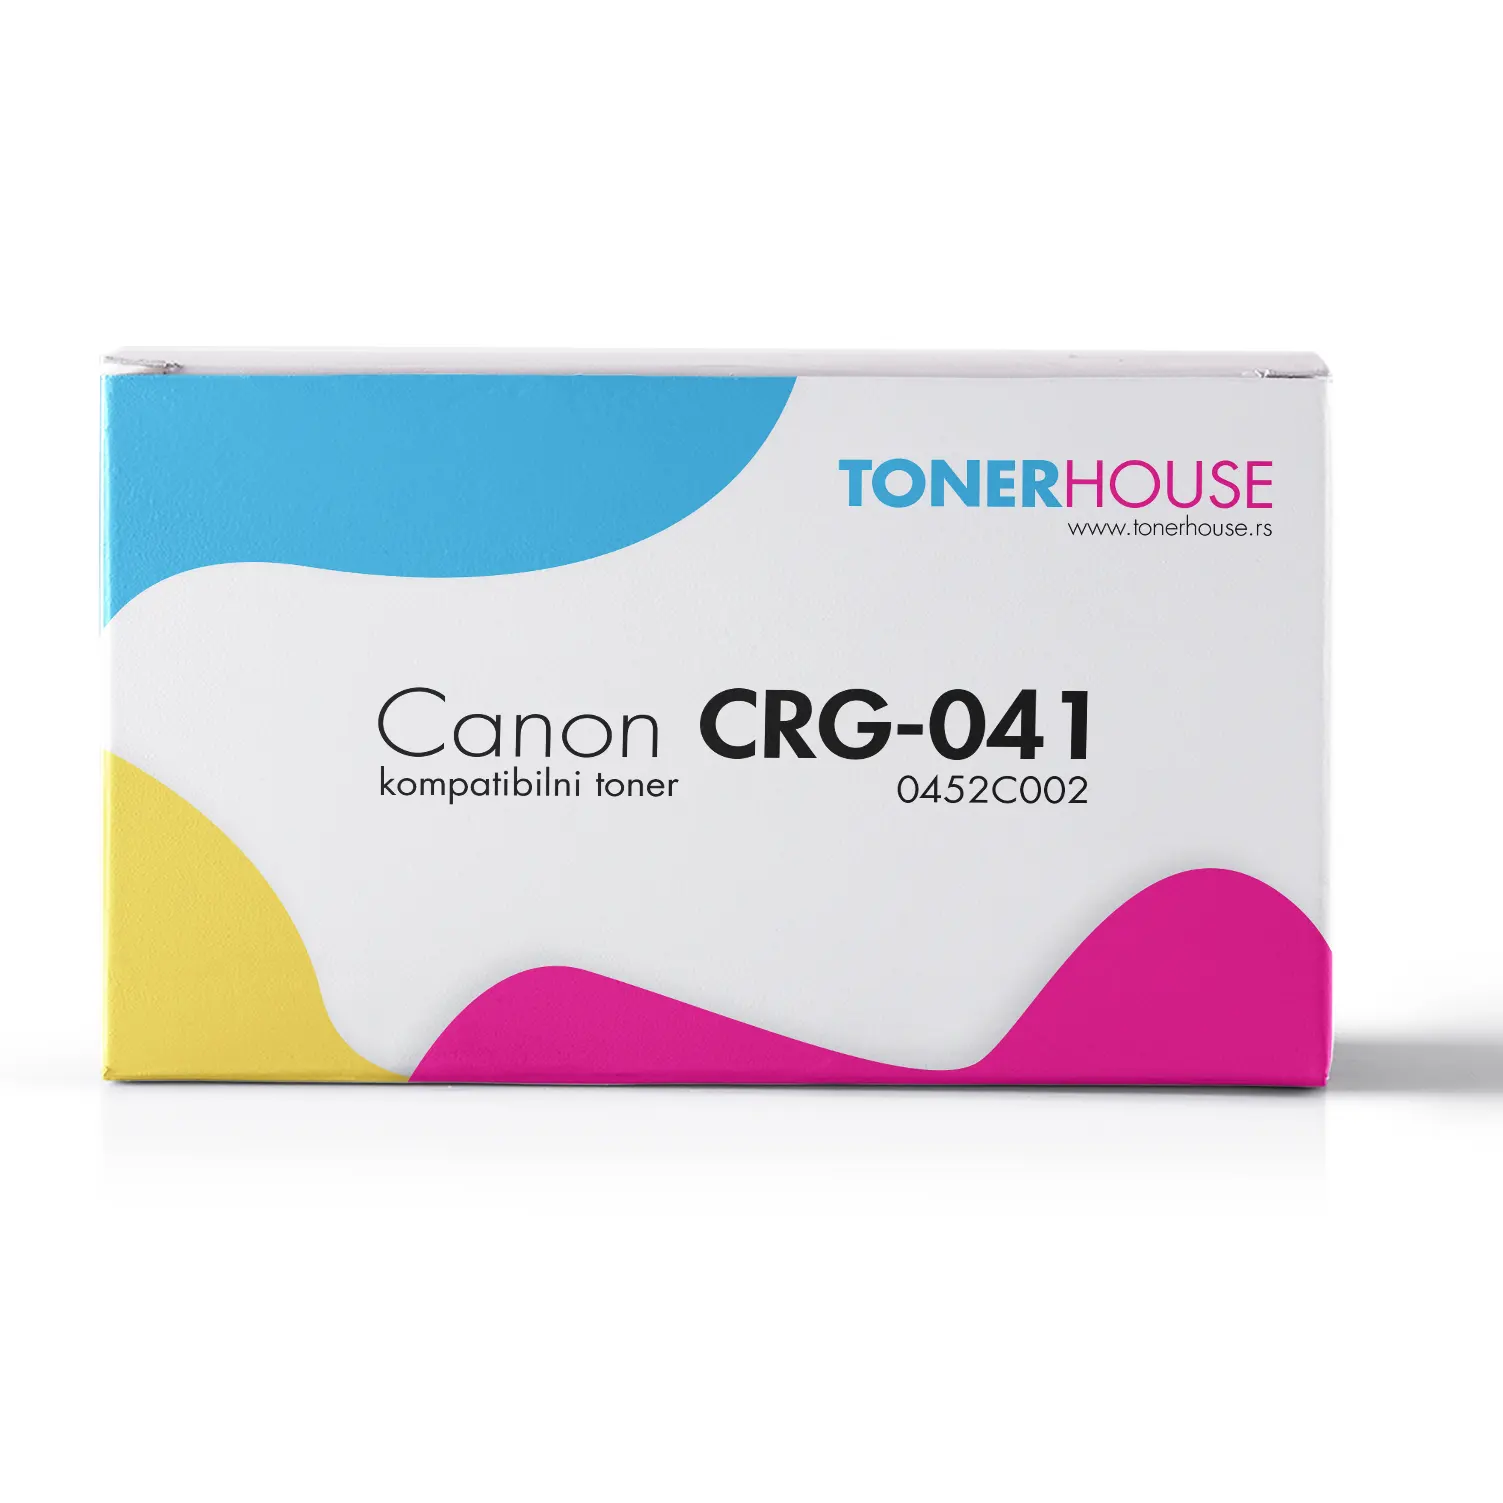 Canon CRG-041 Toner Kompatibilni